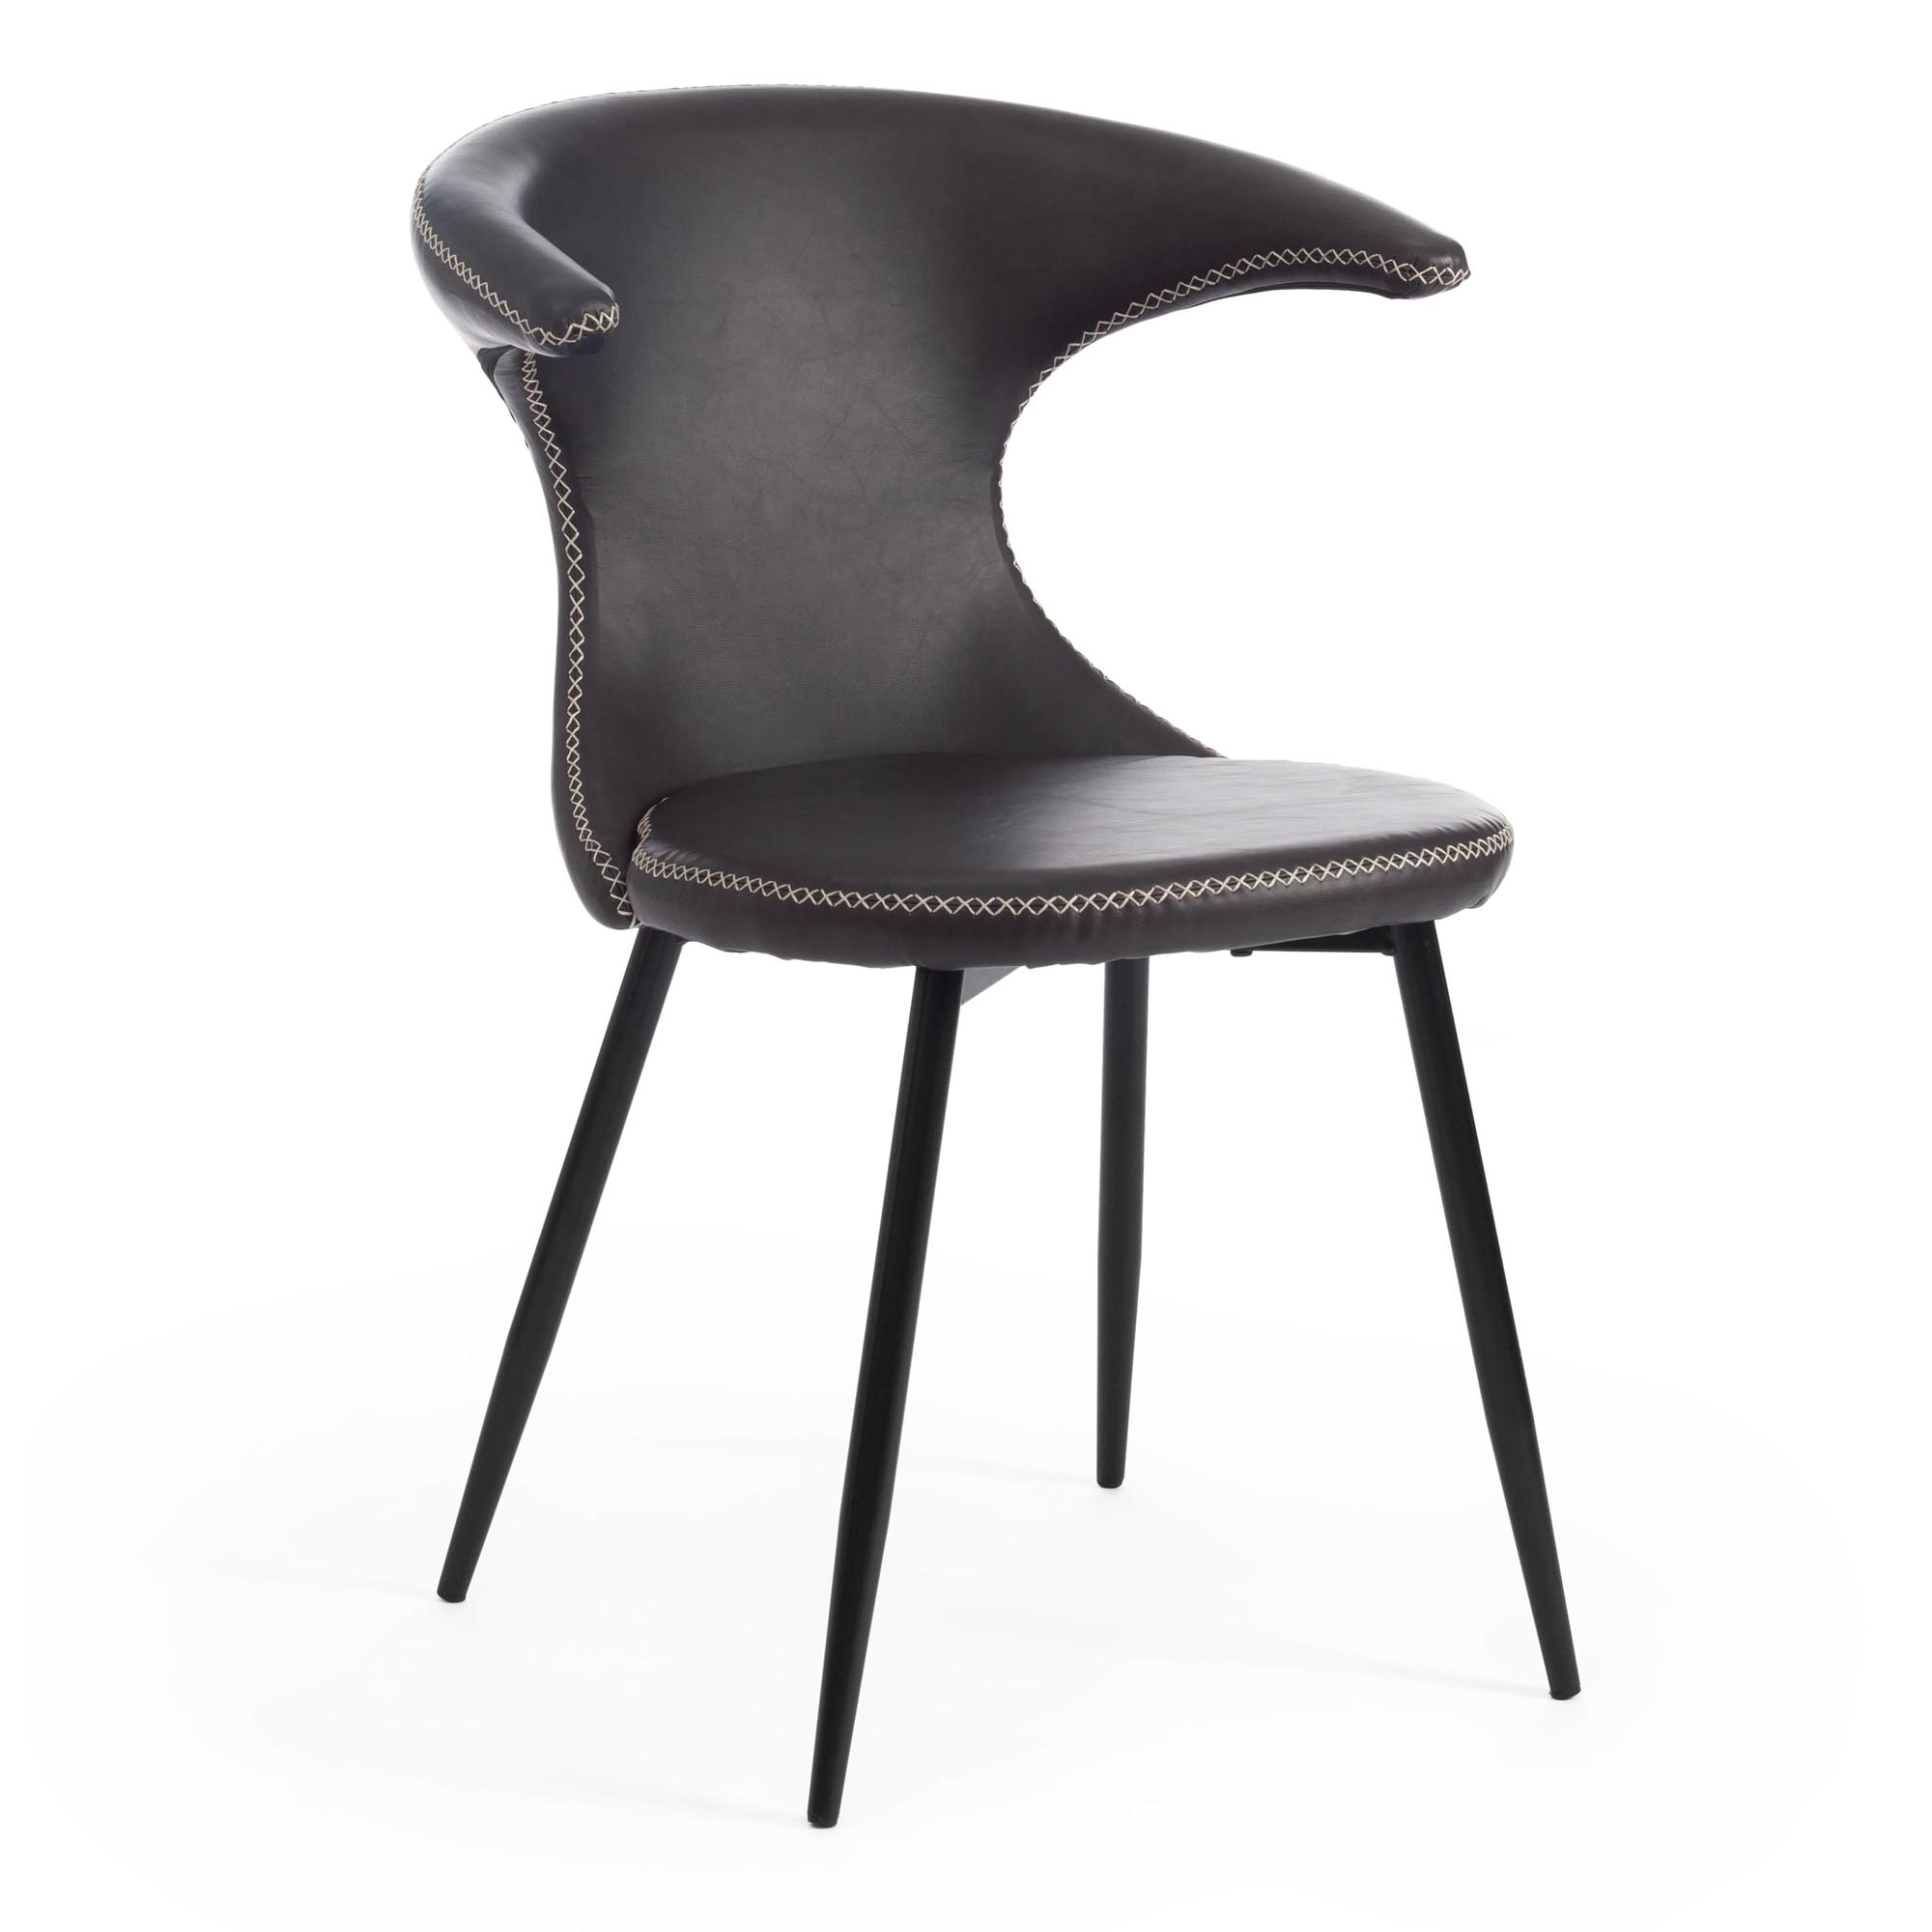 Стул TC Flair 60x56x78 см серый/черный роскошный стул nordic светильник для макияжа домашний круглый стул для спальни туалетный стул сетчатый красный стул для макияжа милый табур